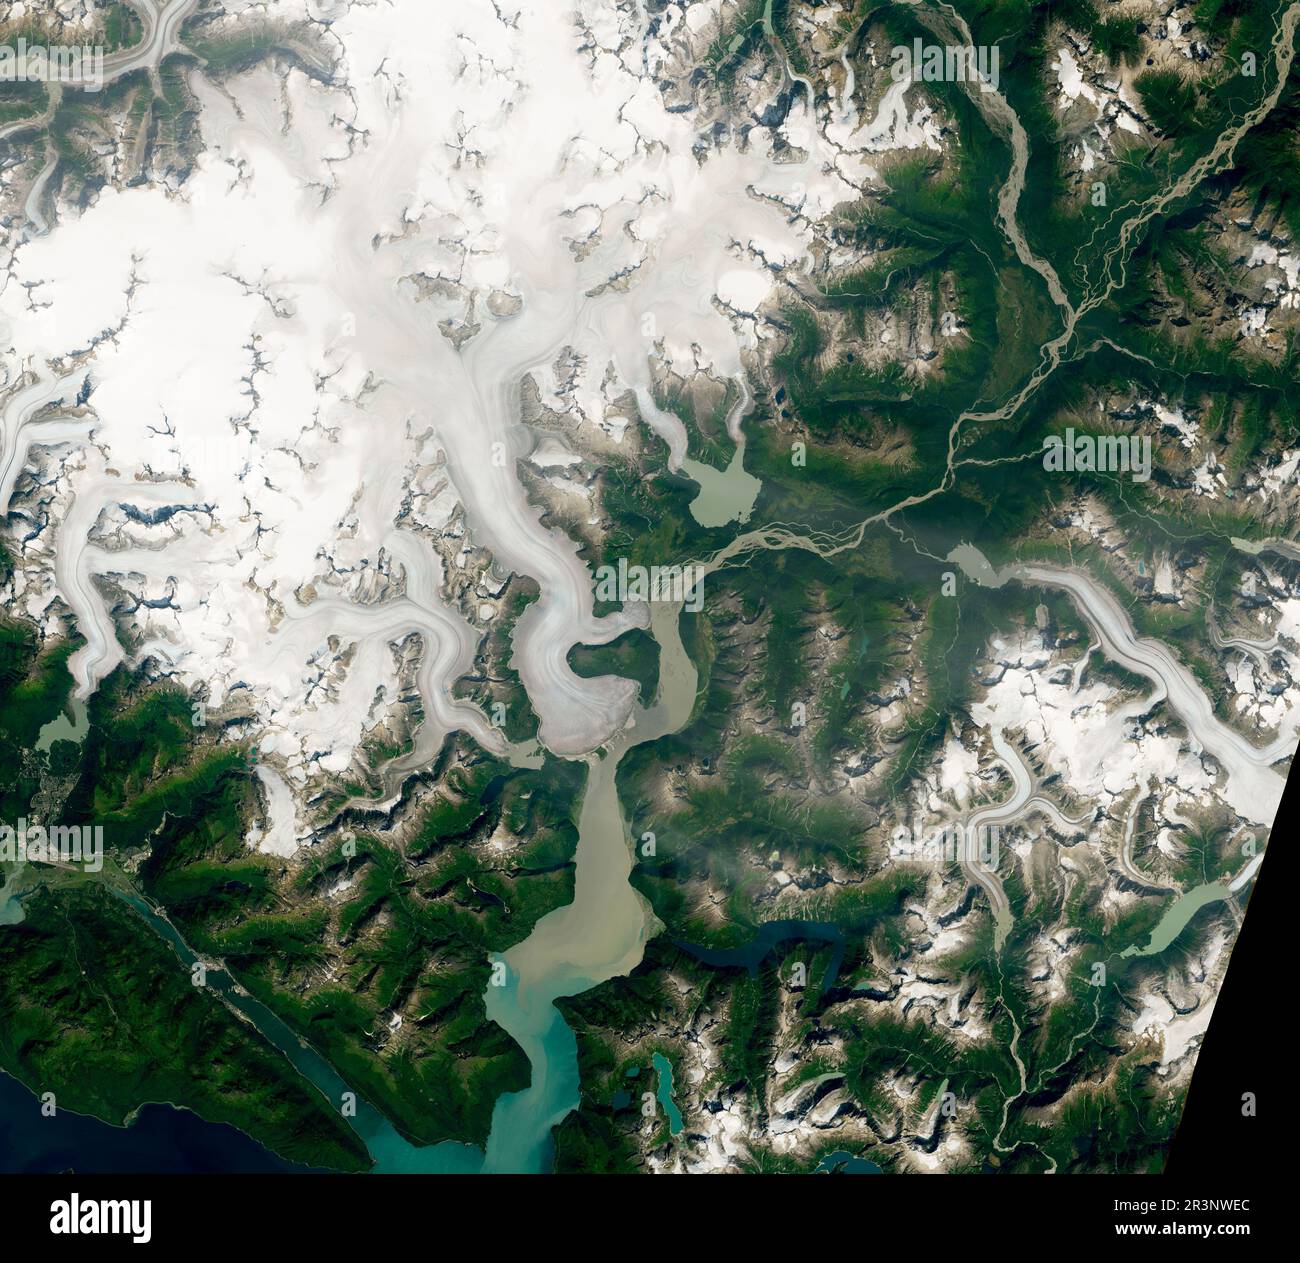 9 agosto 2019 - Alaska - da quasi quattro decenni, Mauri Pelto studia l'avanzamento e il ritiro dei ghiacciai di tutto il mondo. Li ha visti soccombere, uno per uno, all’aumento delle temperature. Dei 250 ghiacciai che ha osservato, tutti si erano ritirati (o accorciati) tranne uno: Il ghiacciaio Taku. Ora una nuova analisi mostra che Taku ha perso massa e si è Unito al resto dei ghiacciai in ritirata. Le immagini di colore naturale sopra mostrano il ghiacciaio il 20 agosto 2014 e il 9 agosto 2019. Le immagini sono state acquisite da Operational Land Imager su Landsat 8. Anche se sottili, i cambiamenti sono più visibili alla th Foto Stock